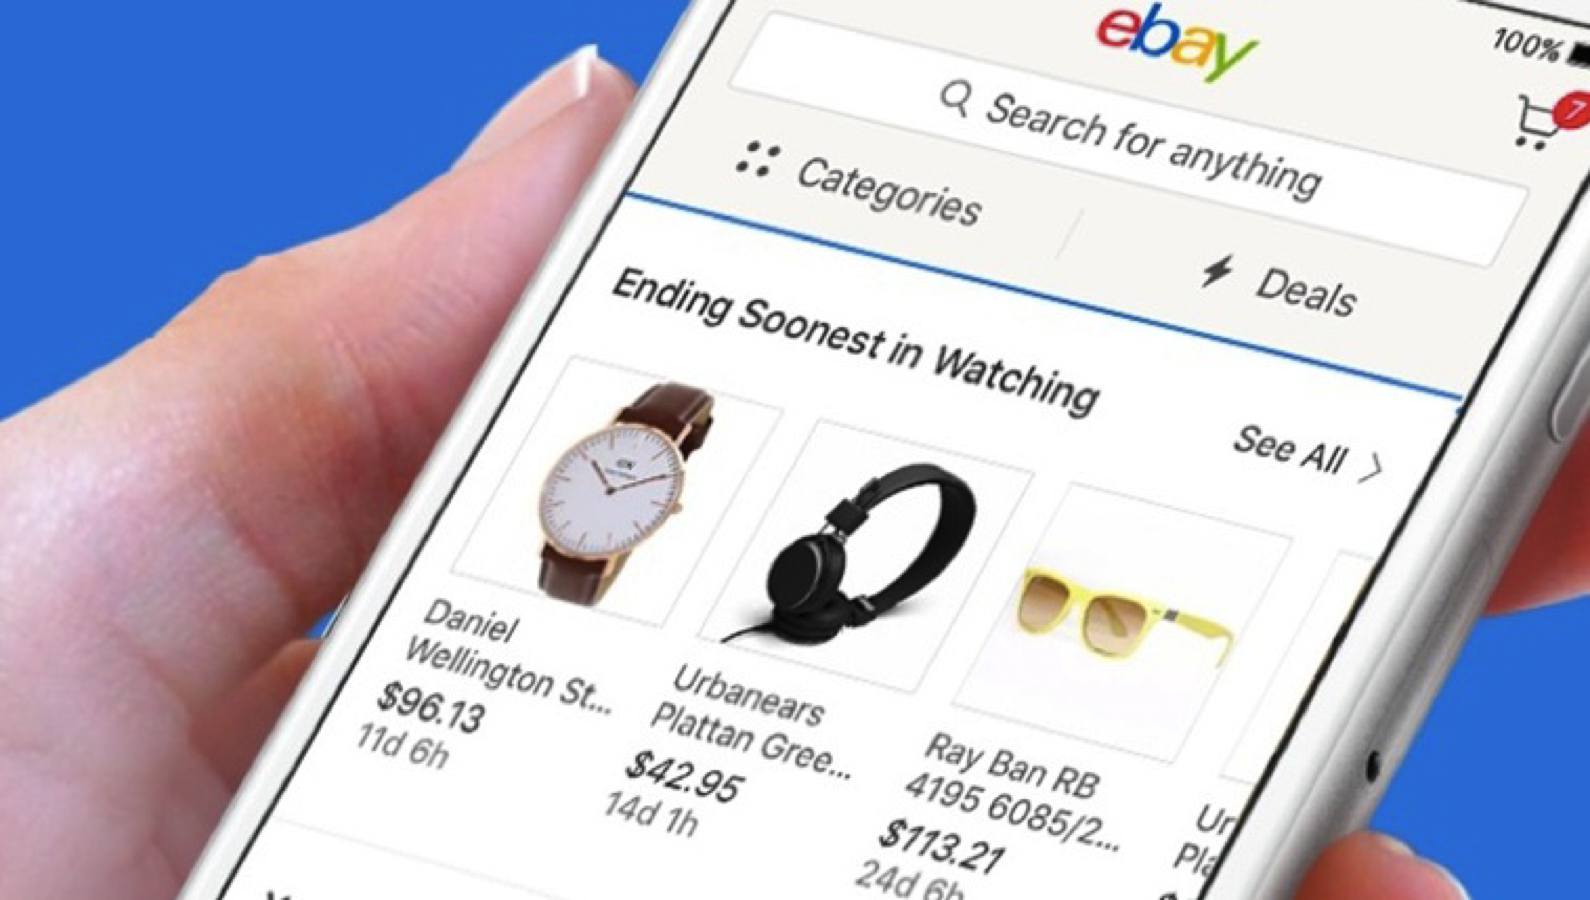 eBay online shopping apps